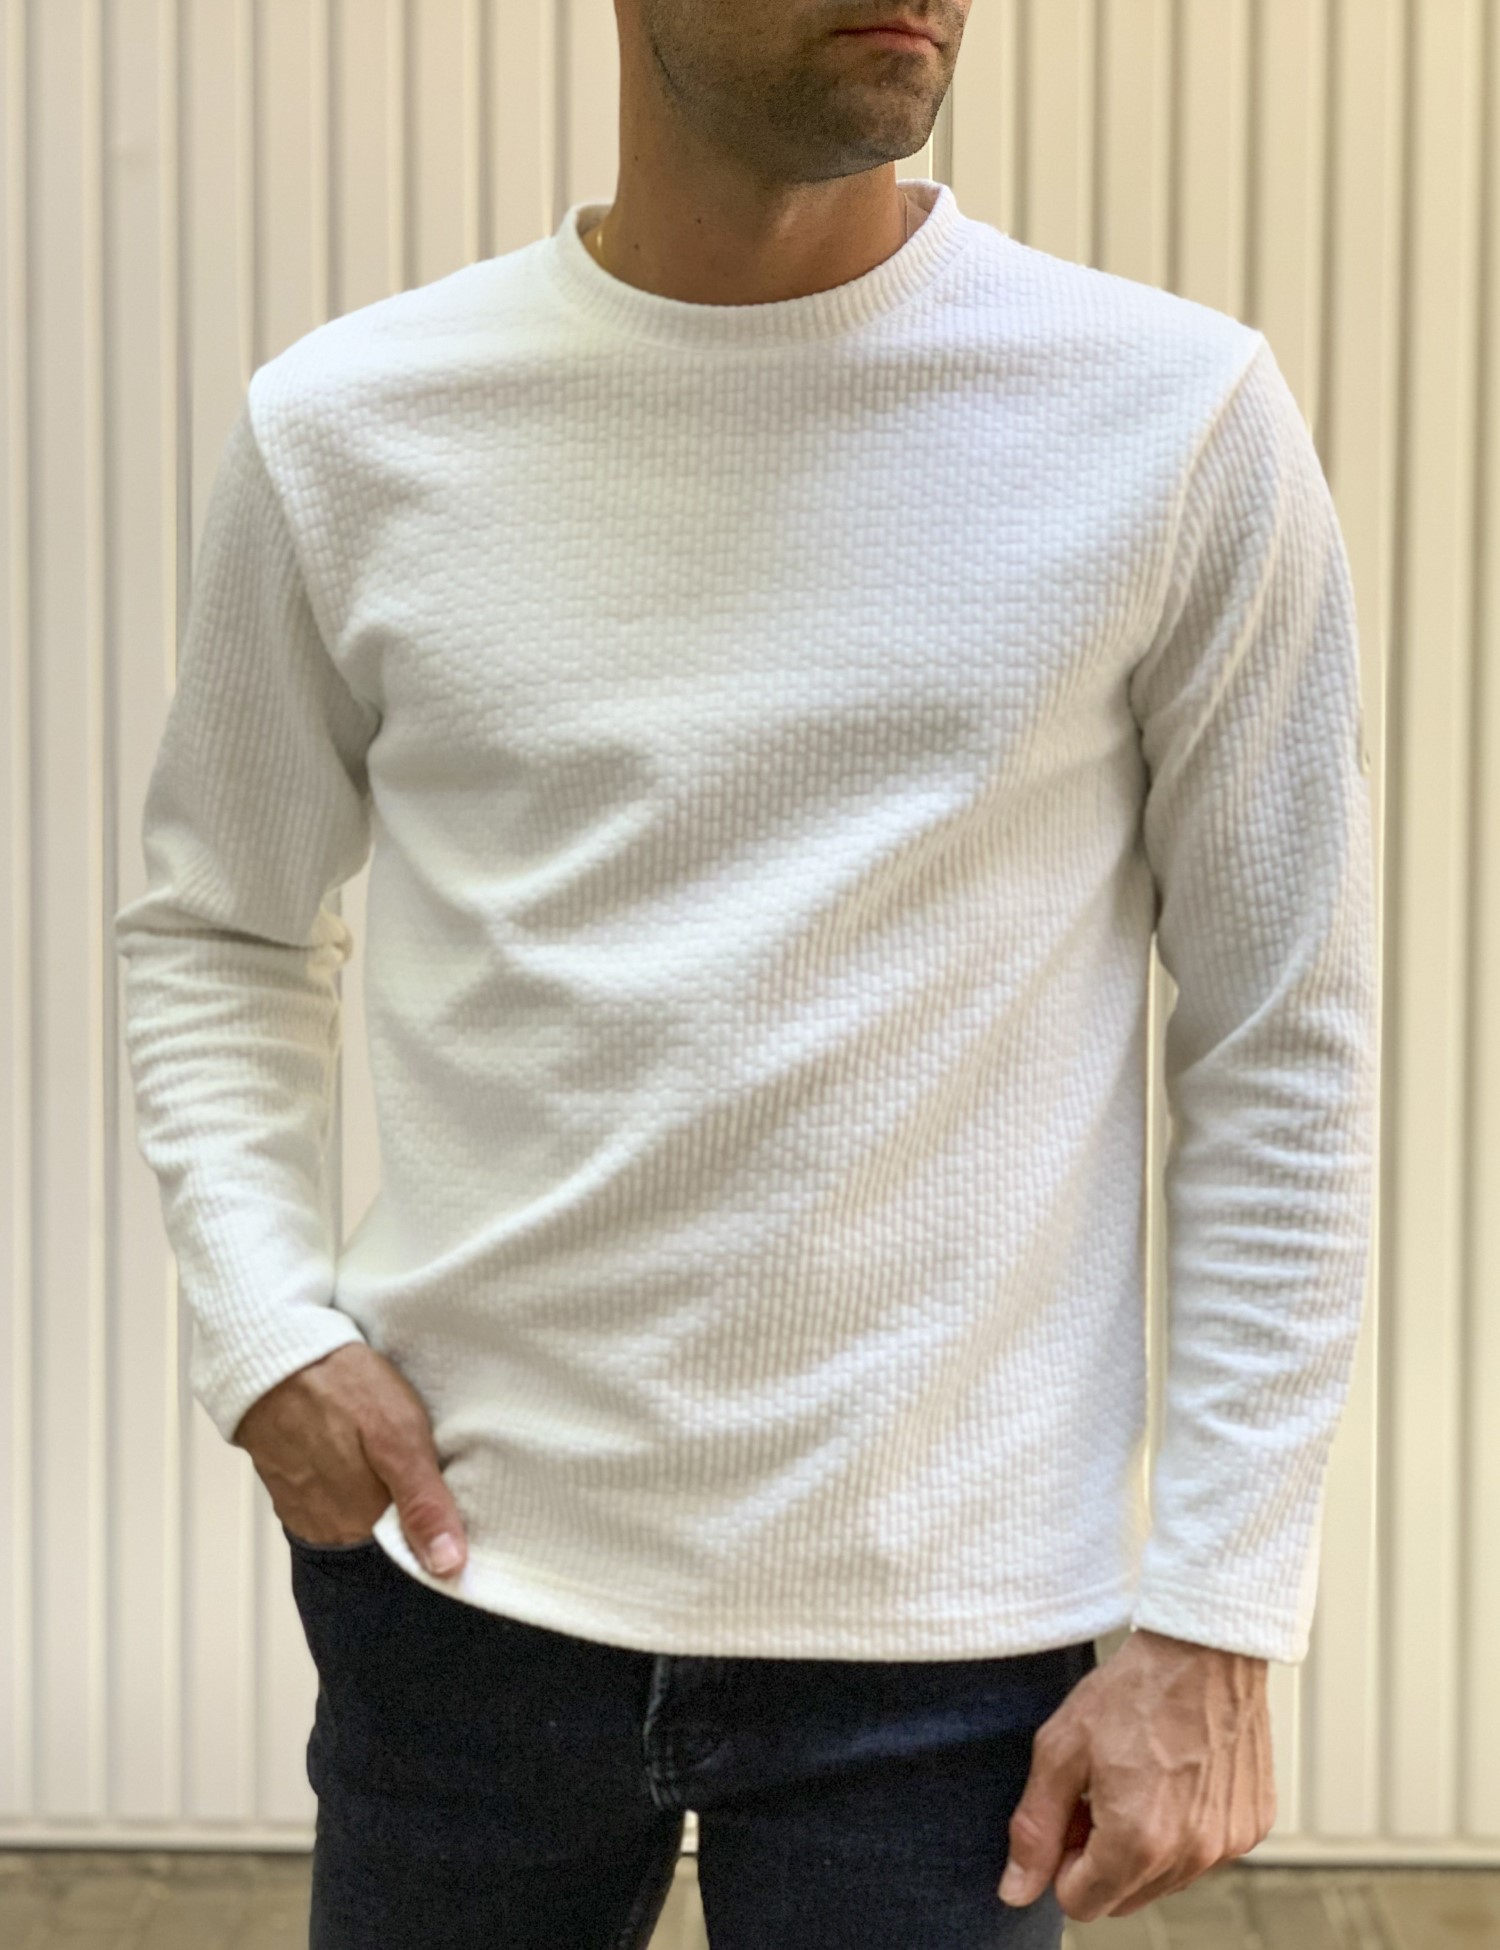 – Ανδρικη λευκη μακρυμανικη μπλουζα με αναγλυφο σχεδιο MAJE106